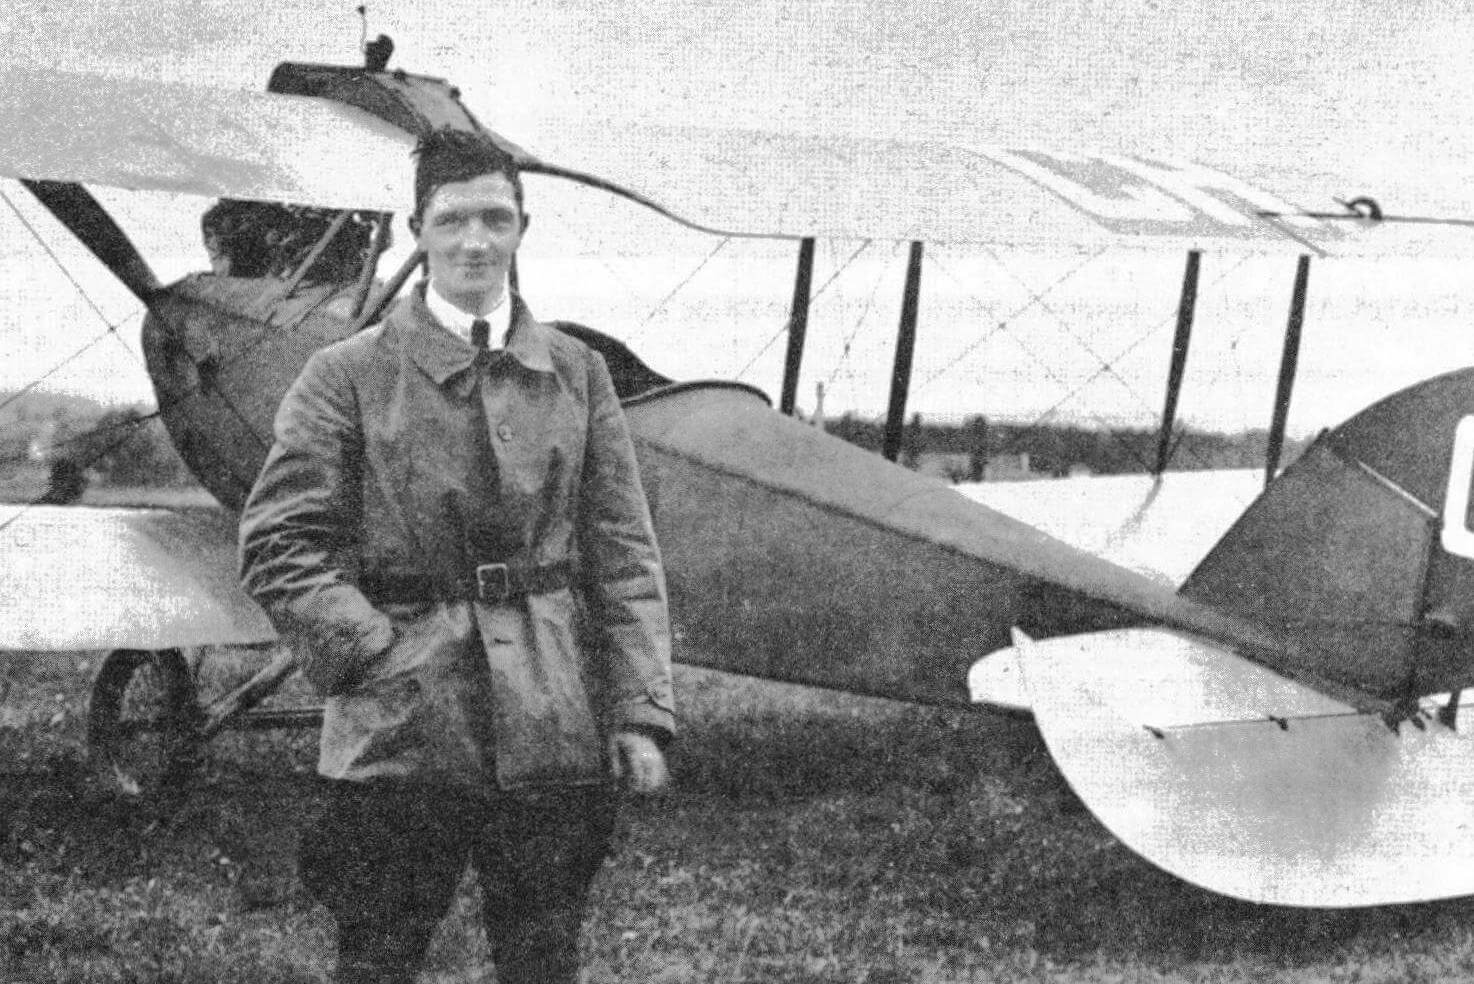 Пионер швейцарской авиации Альфред Комте возле одного из своих легких самолетов